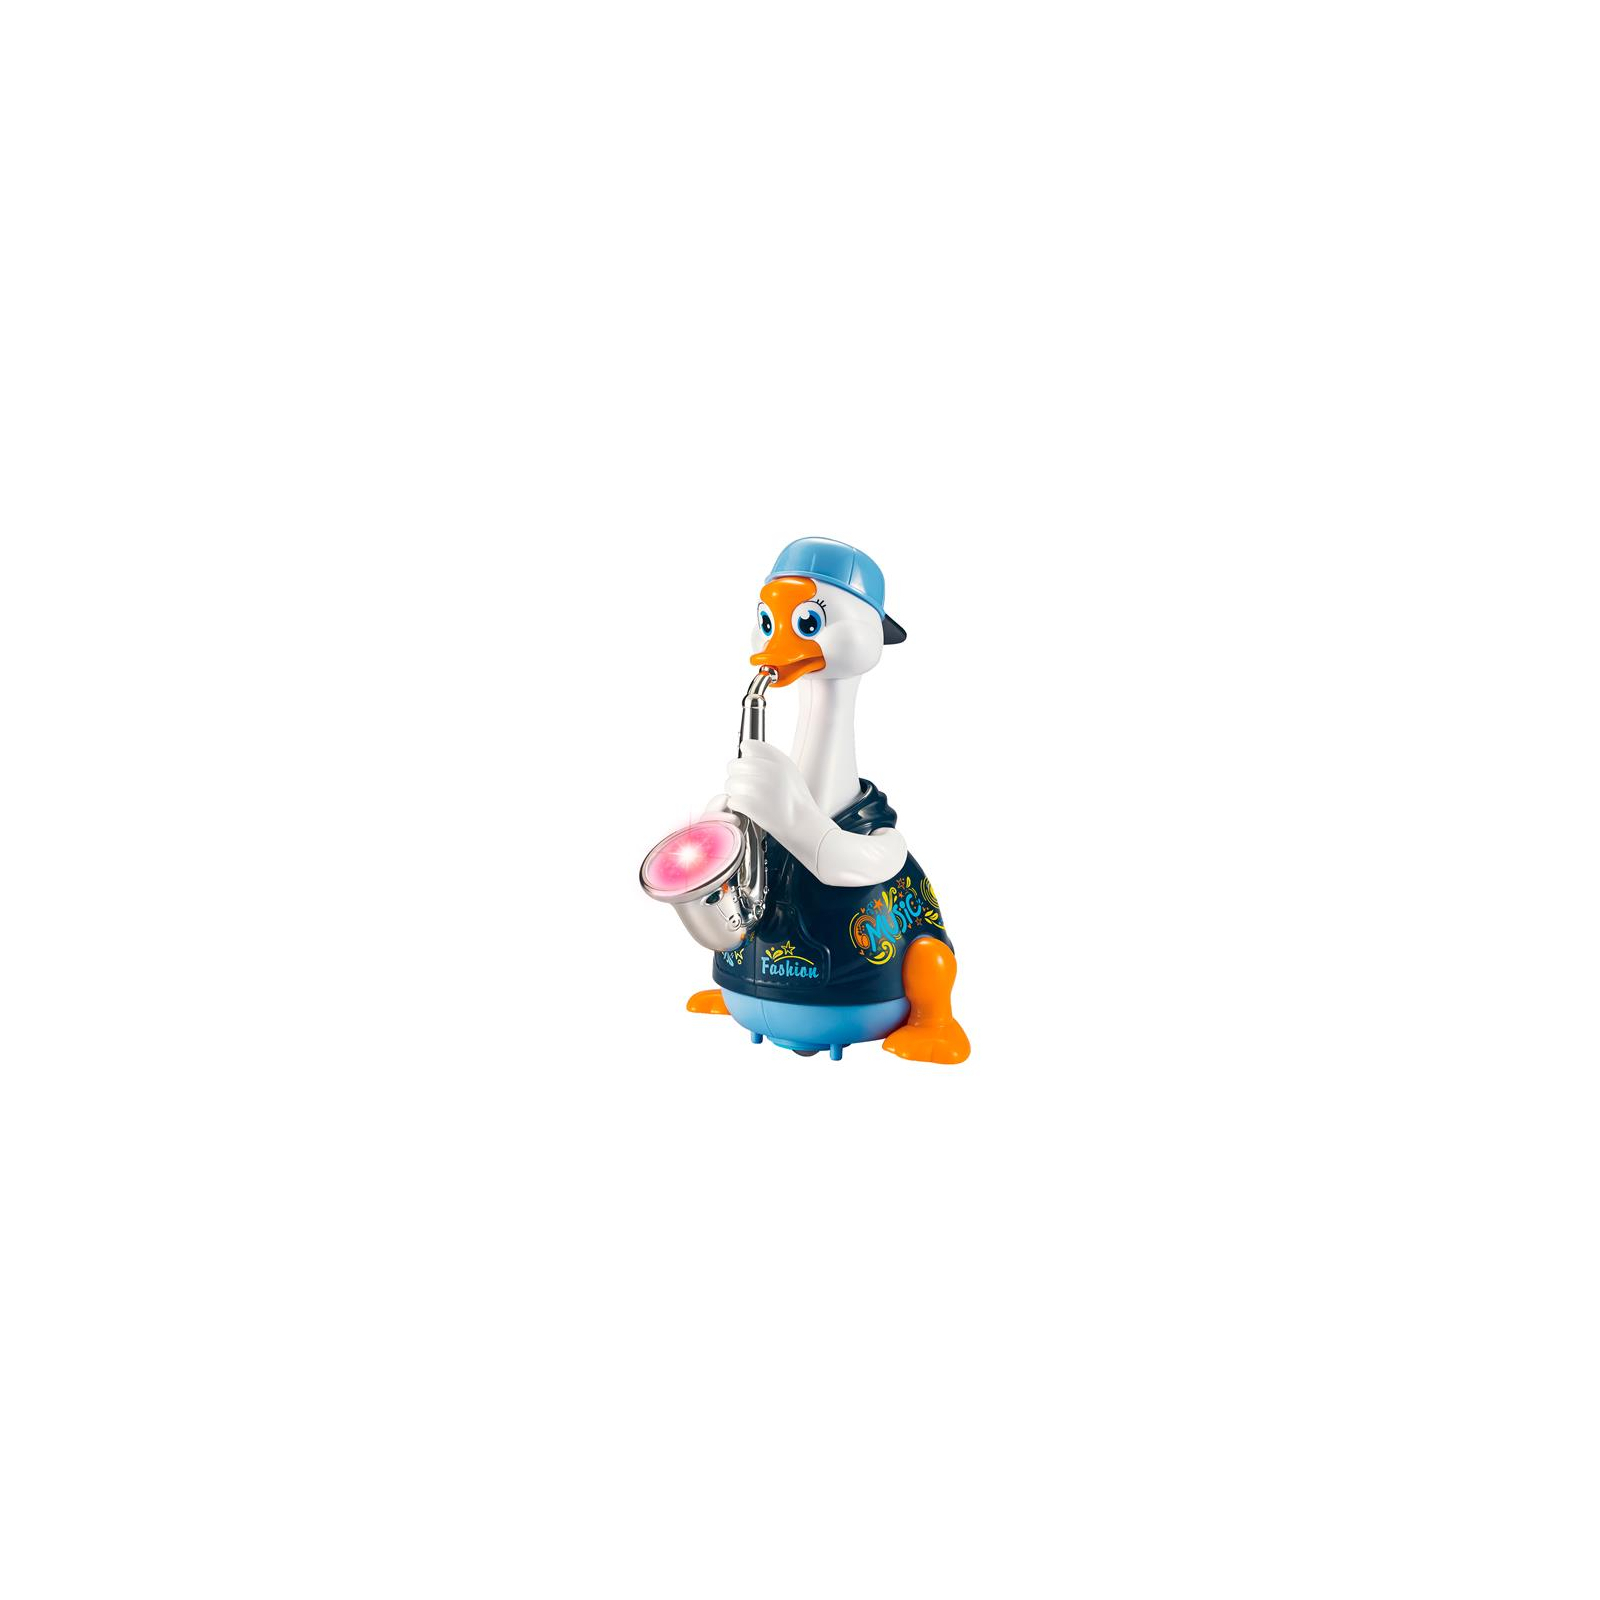 Развивающая игрушка Hola Toys Гусь-саксофонист, синий (6111-blue)